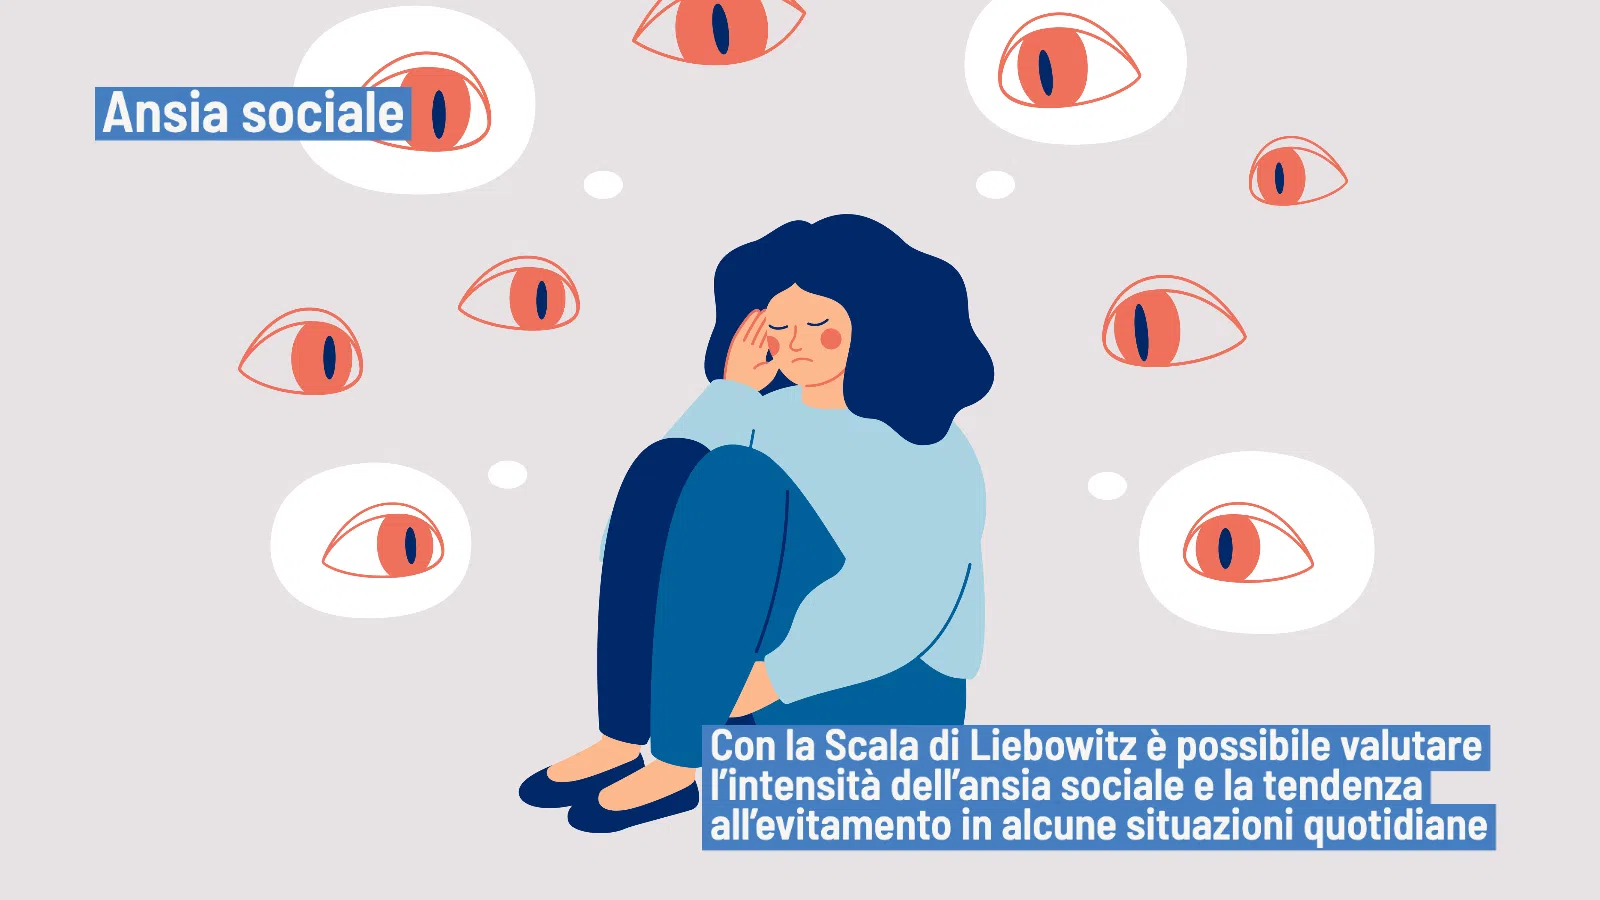 Ansia sociale: la validazione italiana della Liebowitx Social Anxiety Scale